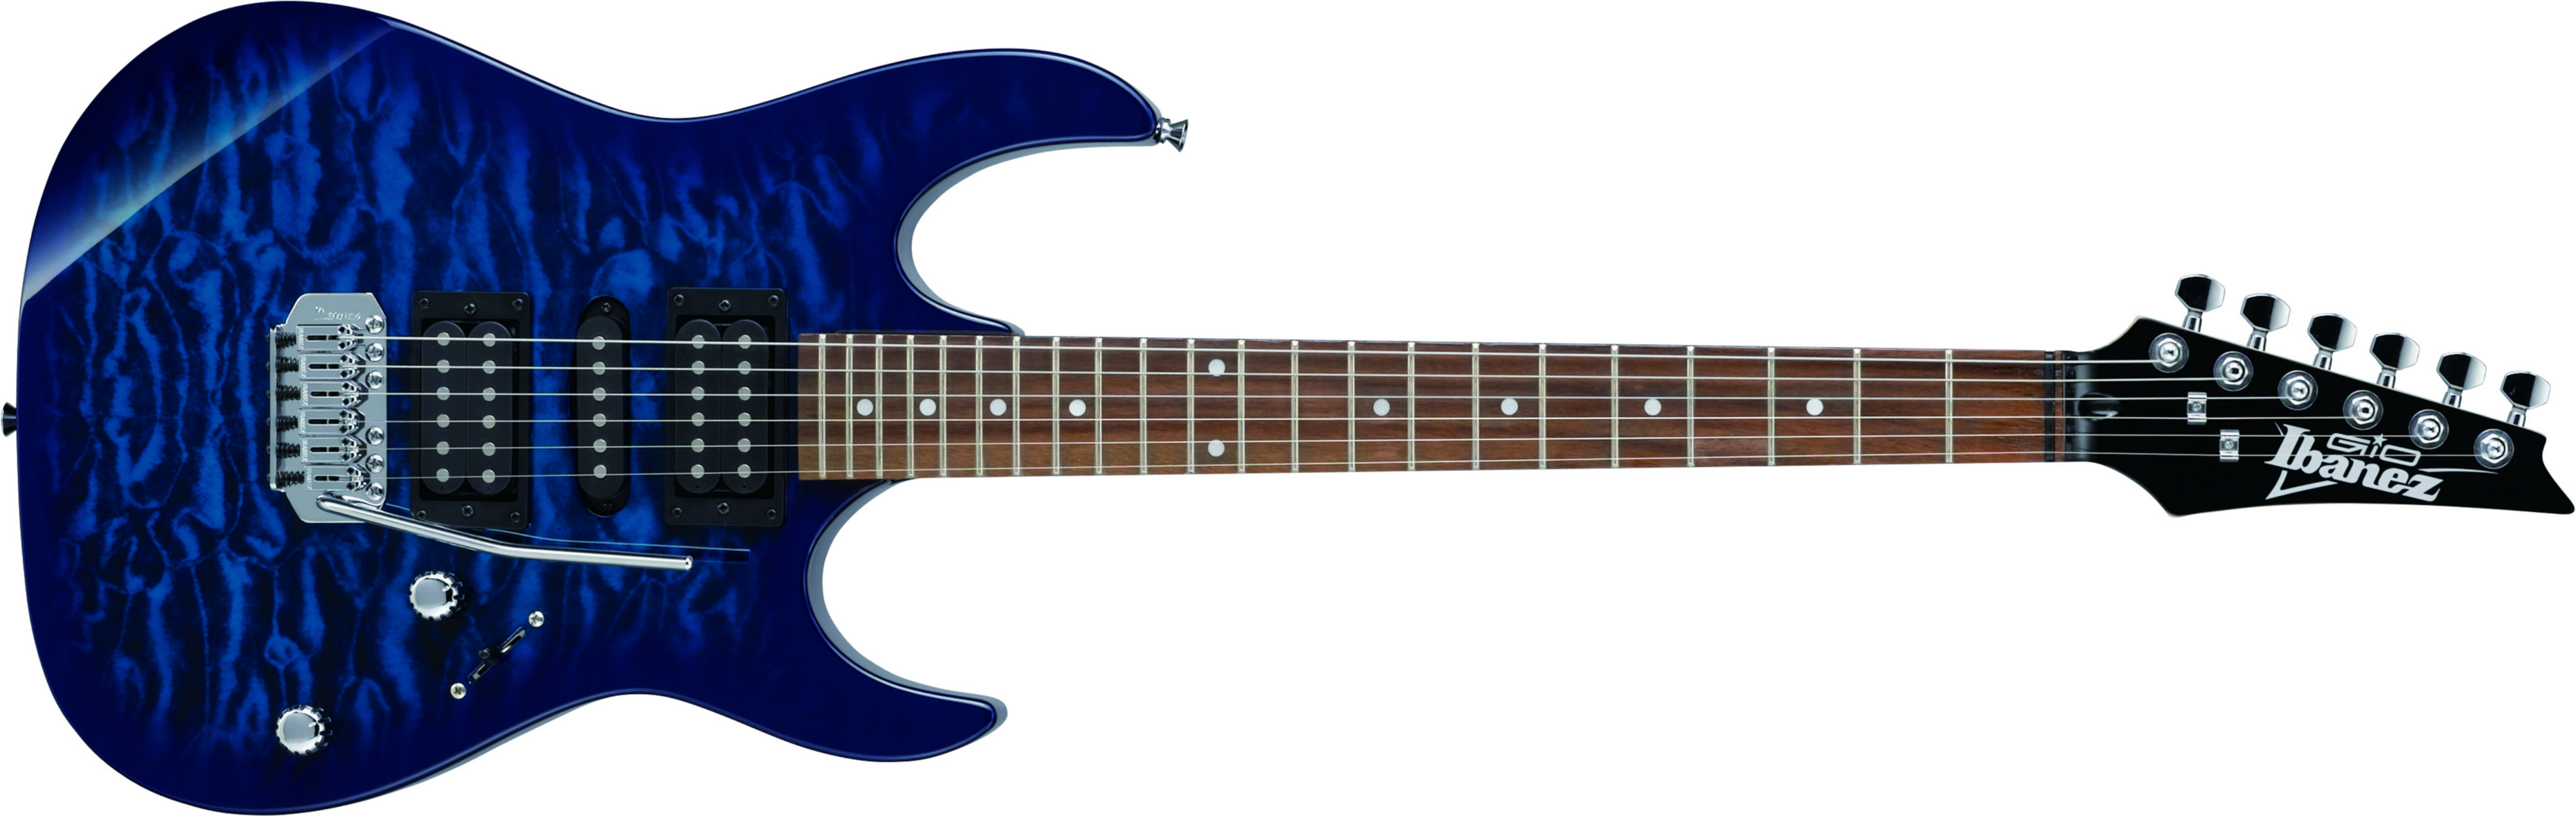 Ibanez Grx70qa Tbb Gio Hsh Trem Nzp - Transparent Blue Burst - Guitare Électrique Forme Str - Main picture